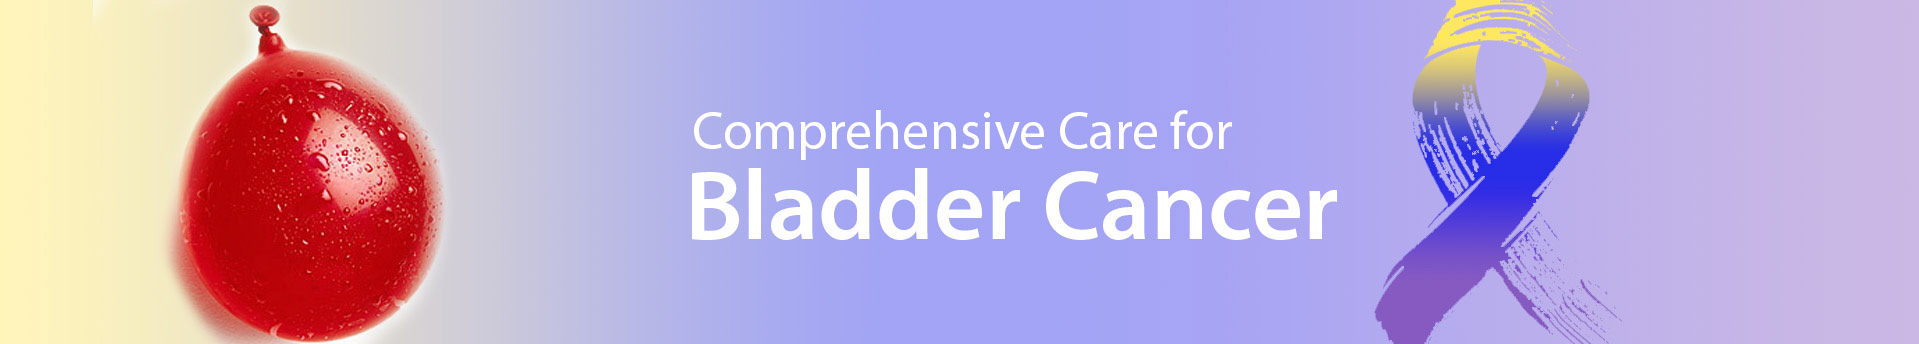 Medicaoncology bladder Cancer